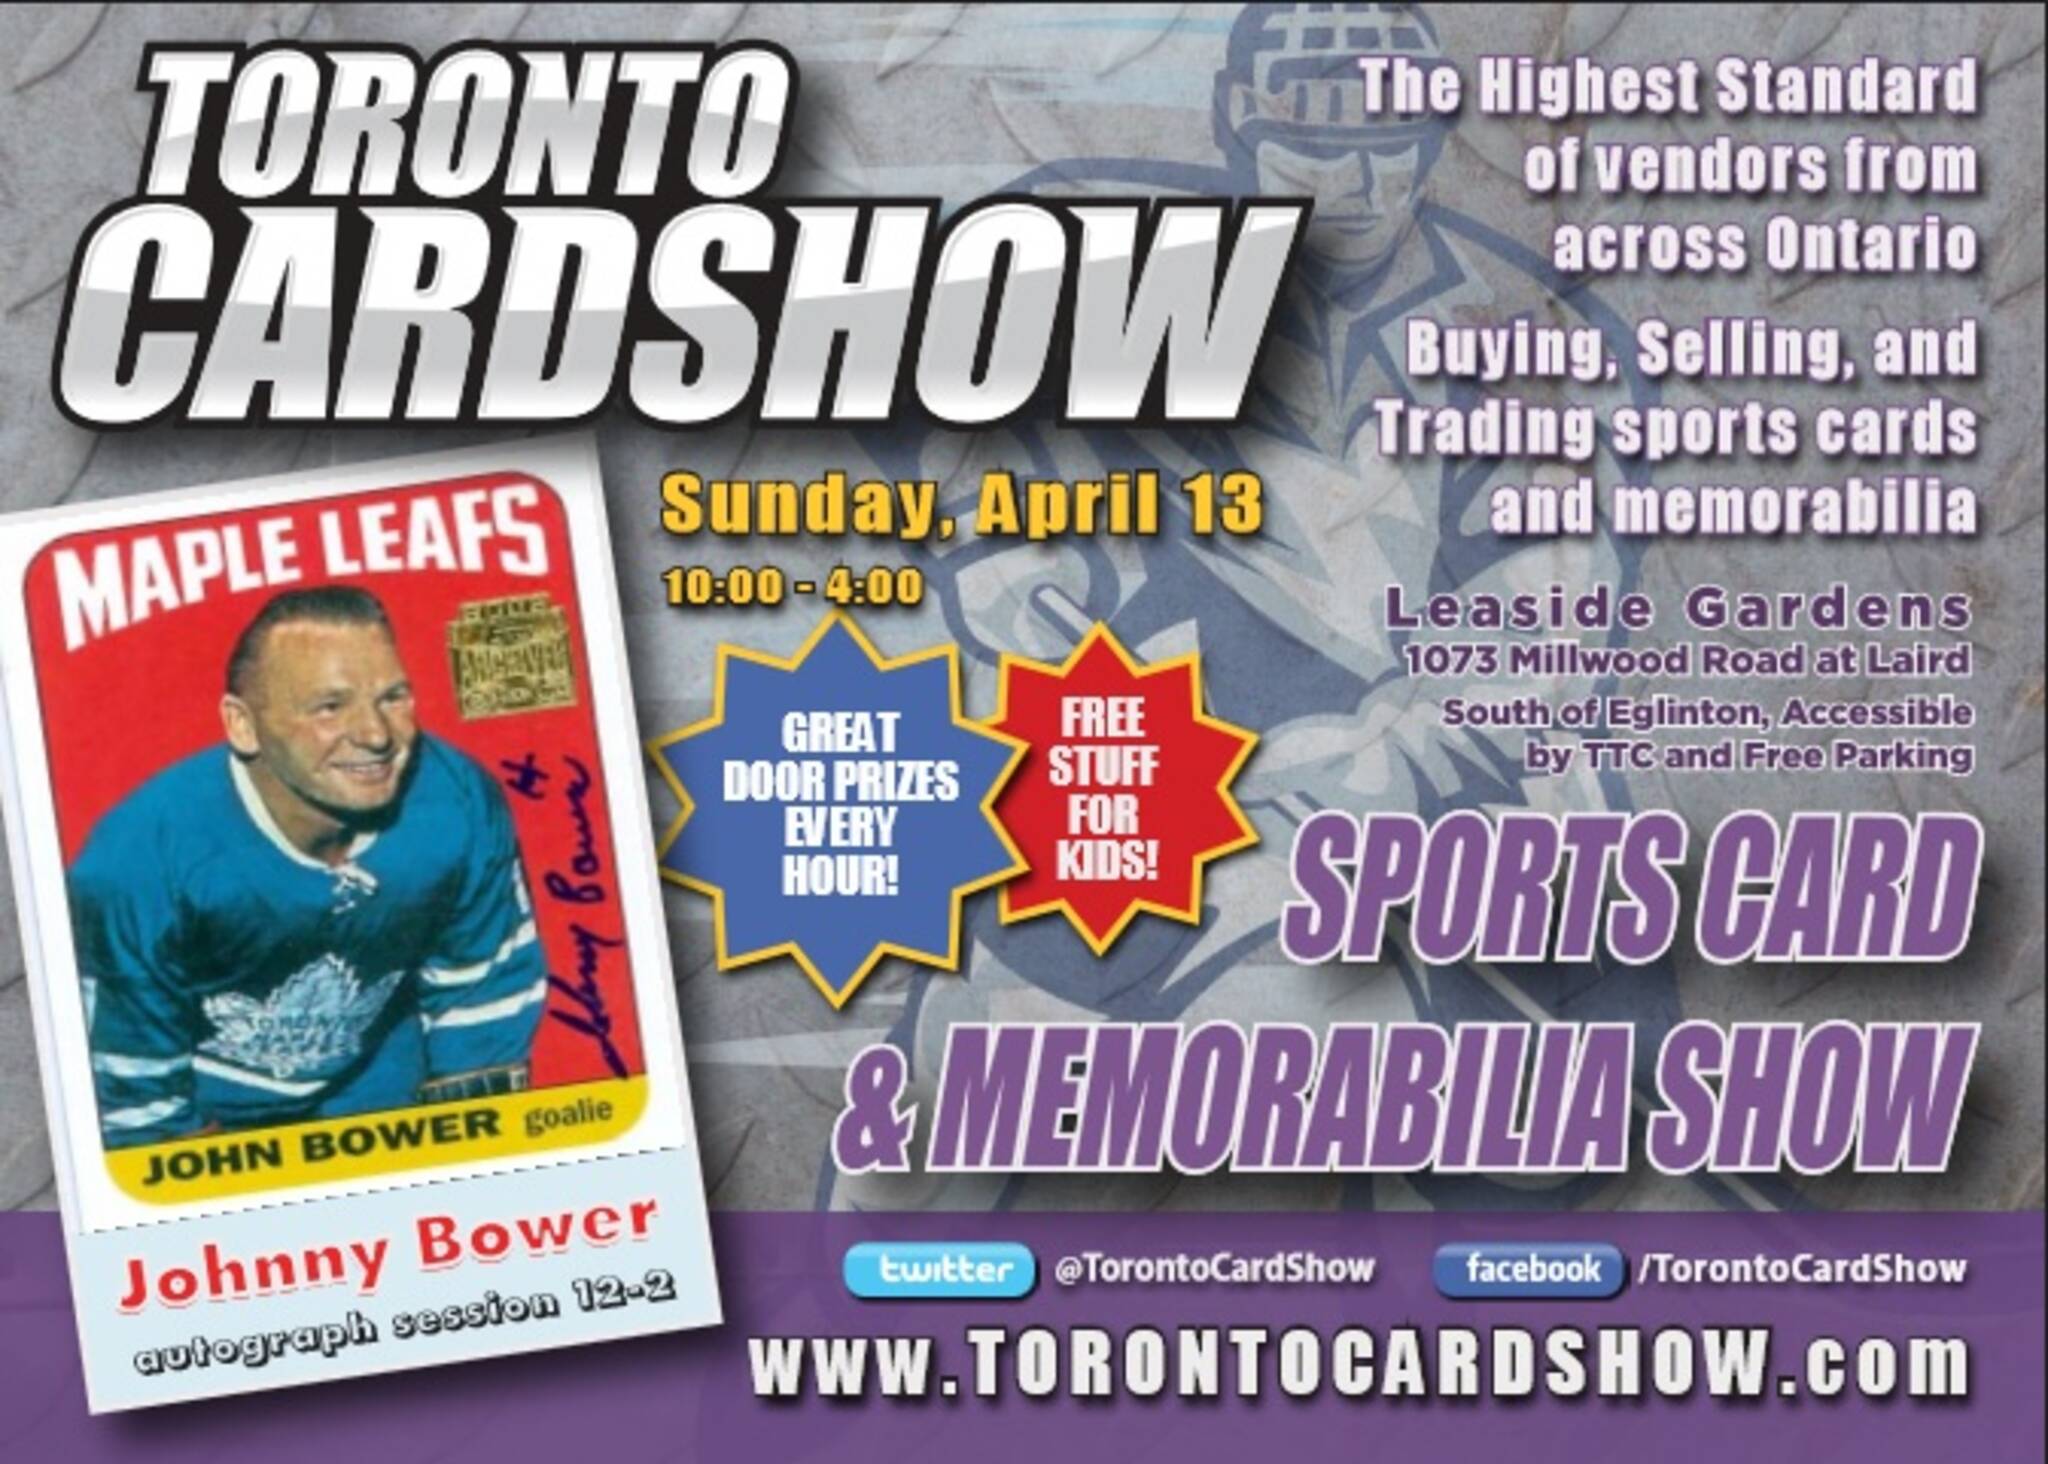 Toronto Card Show Sports Card & Memorabilia Show